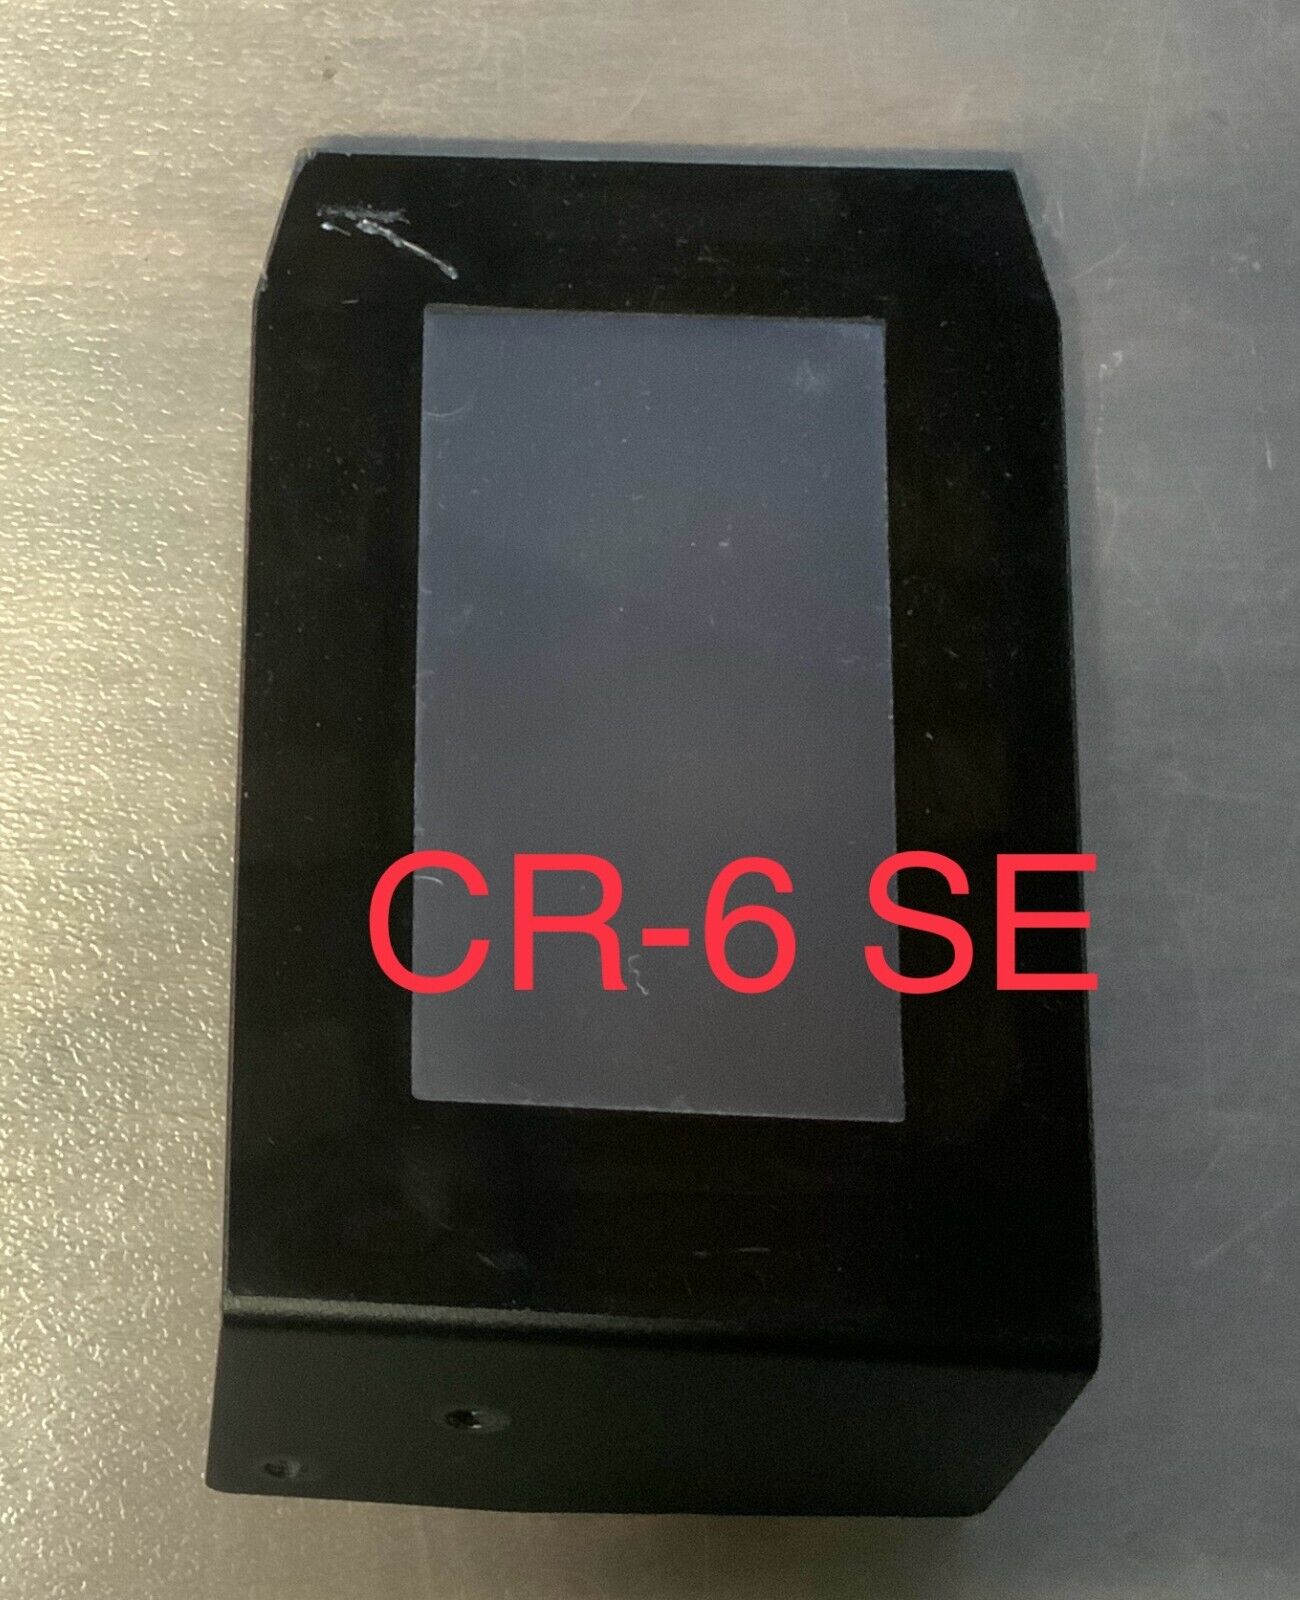 Creality CR-6 SE touchscreen